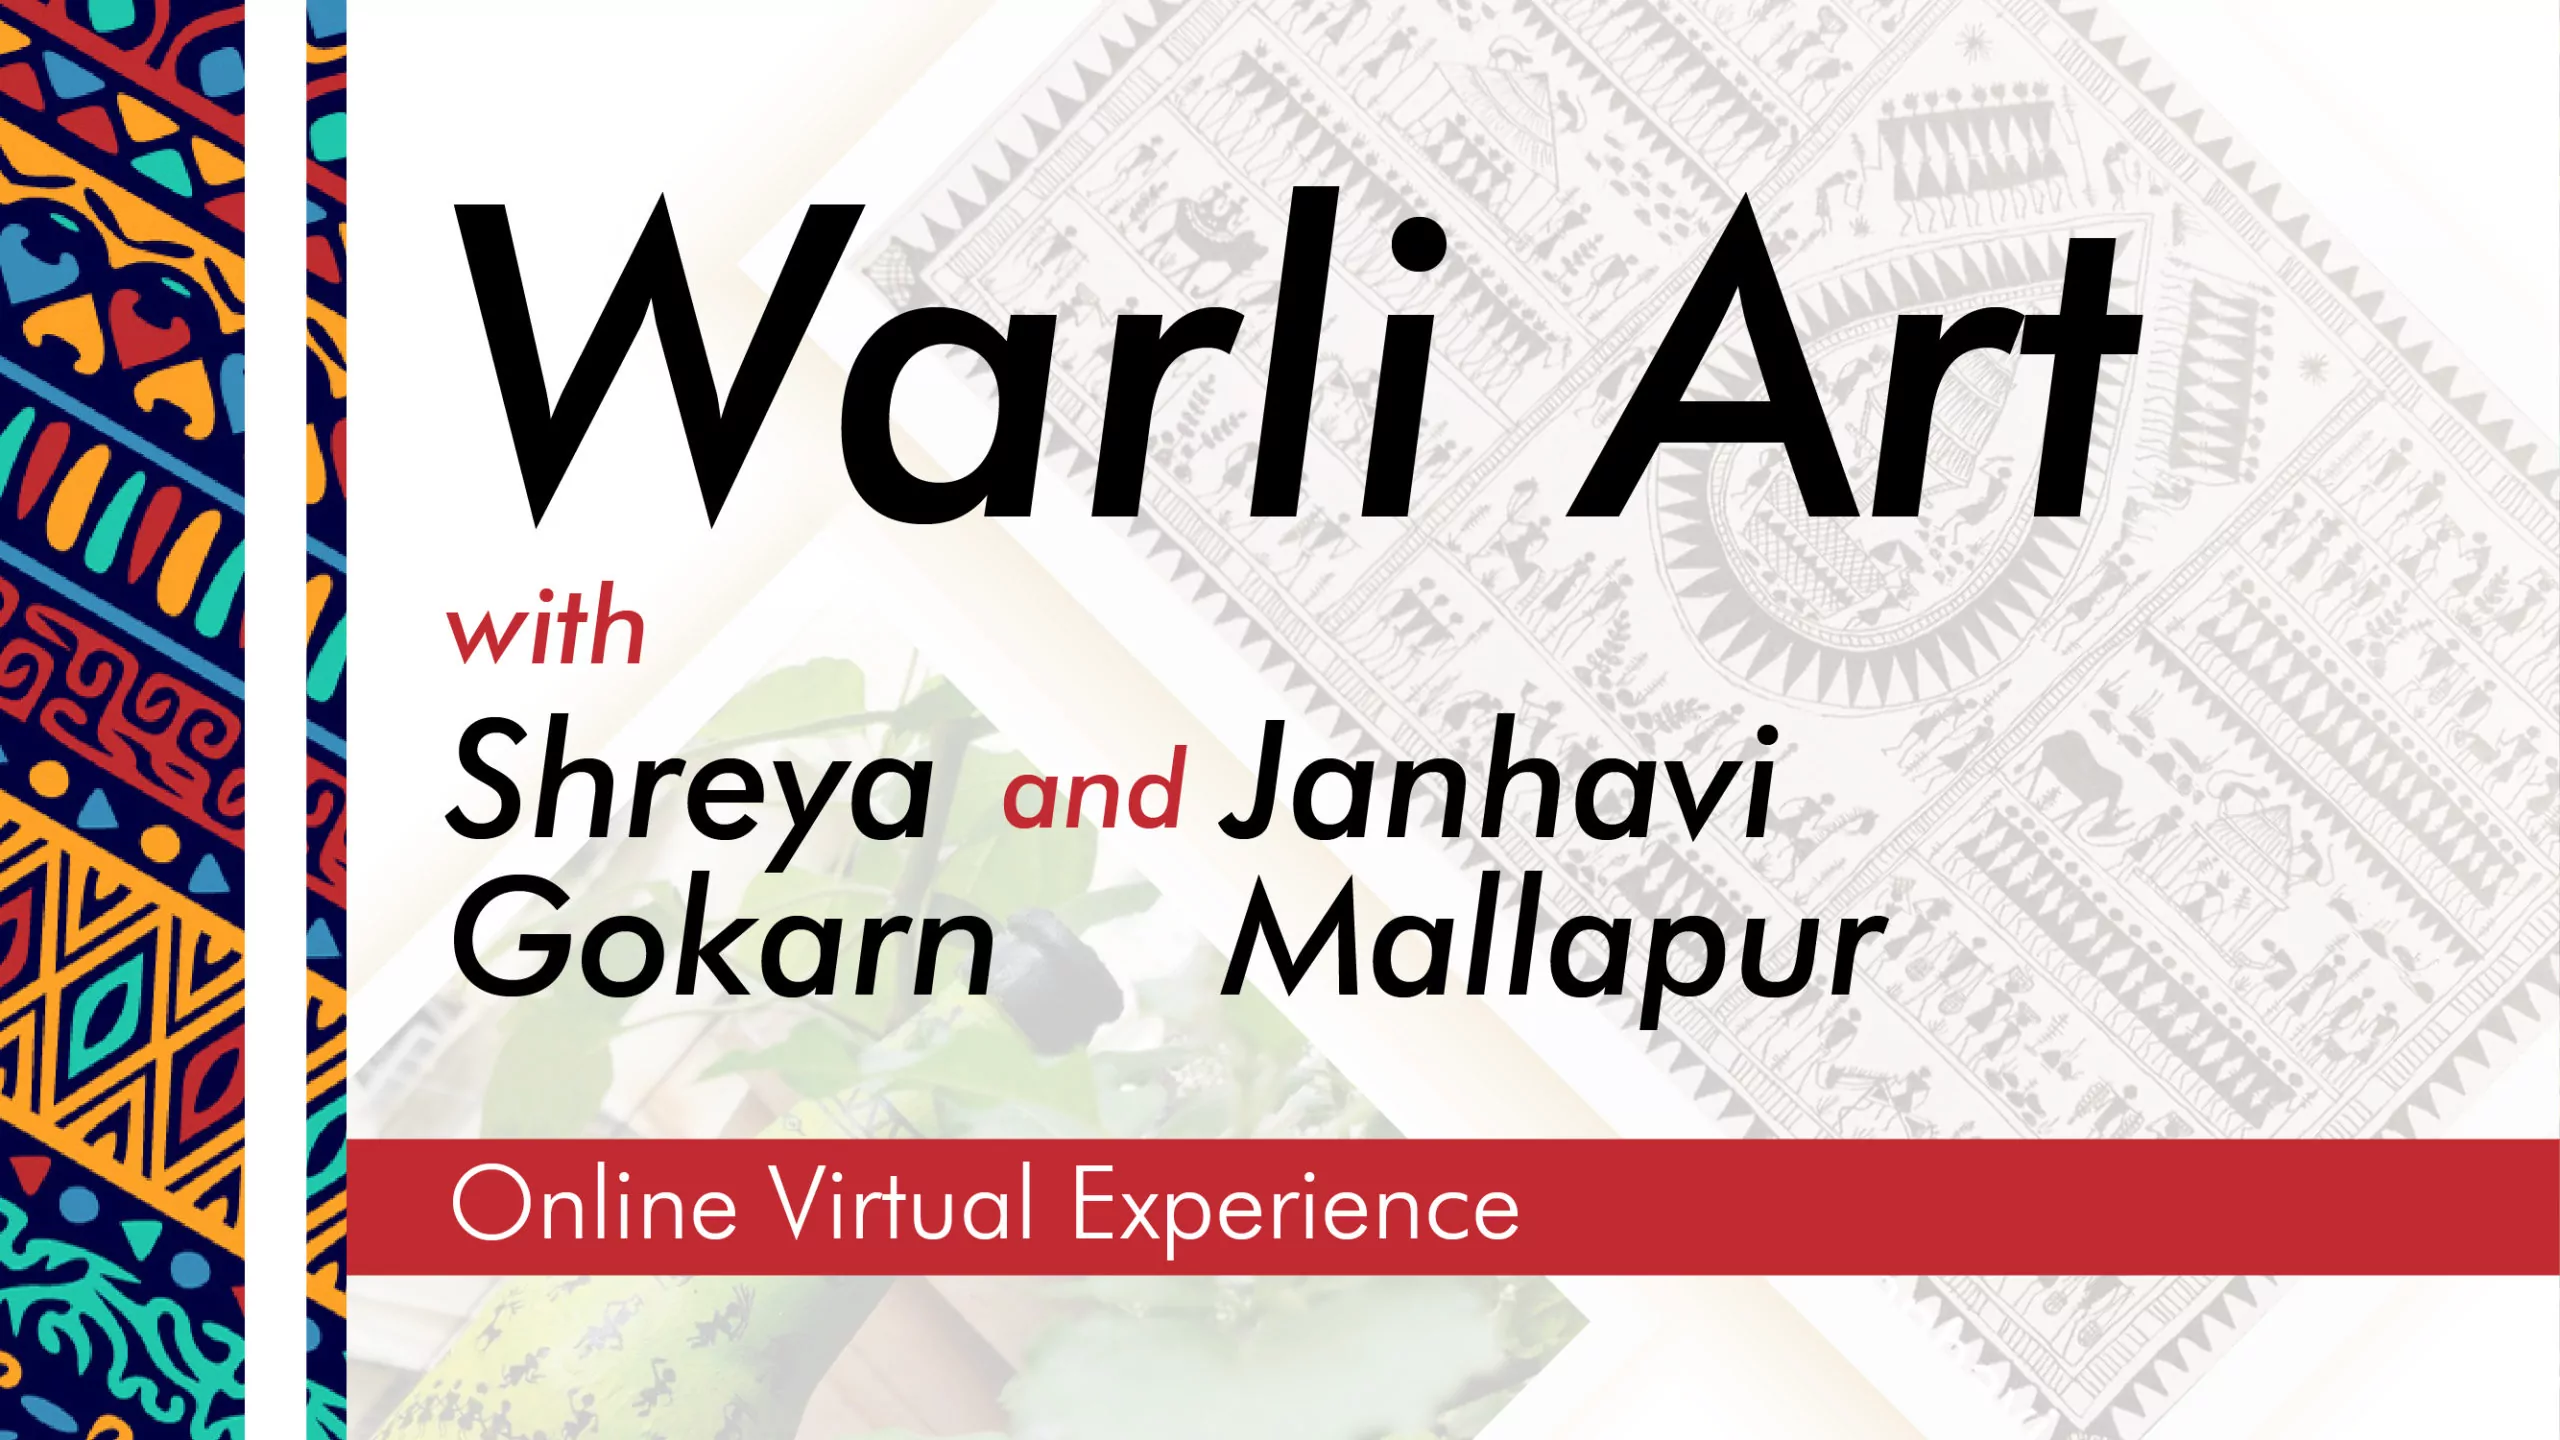 Warli Art Workshop With Shreya Gokarn & Janhavi Mallapur